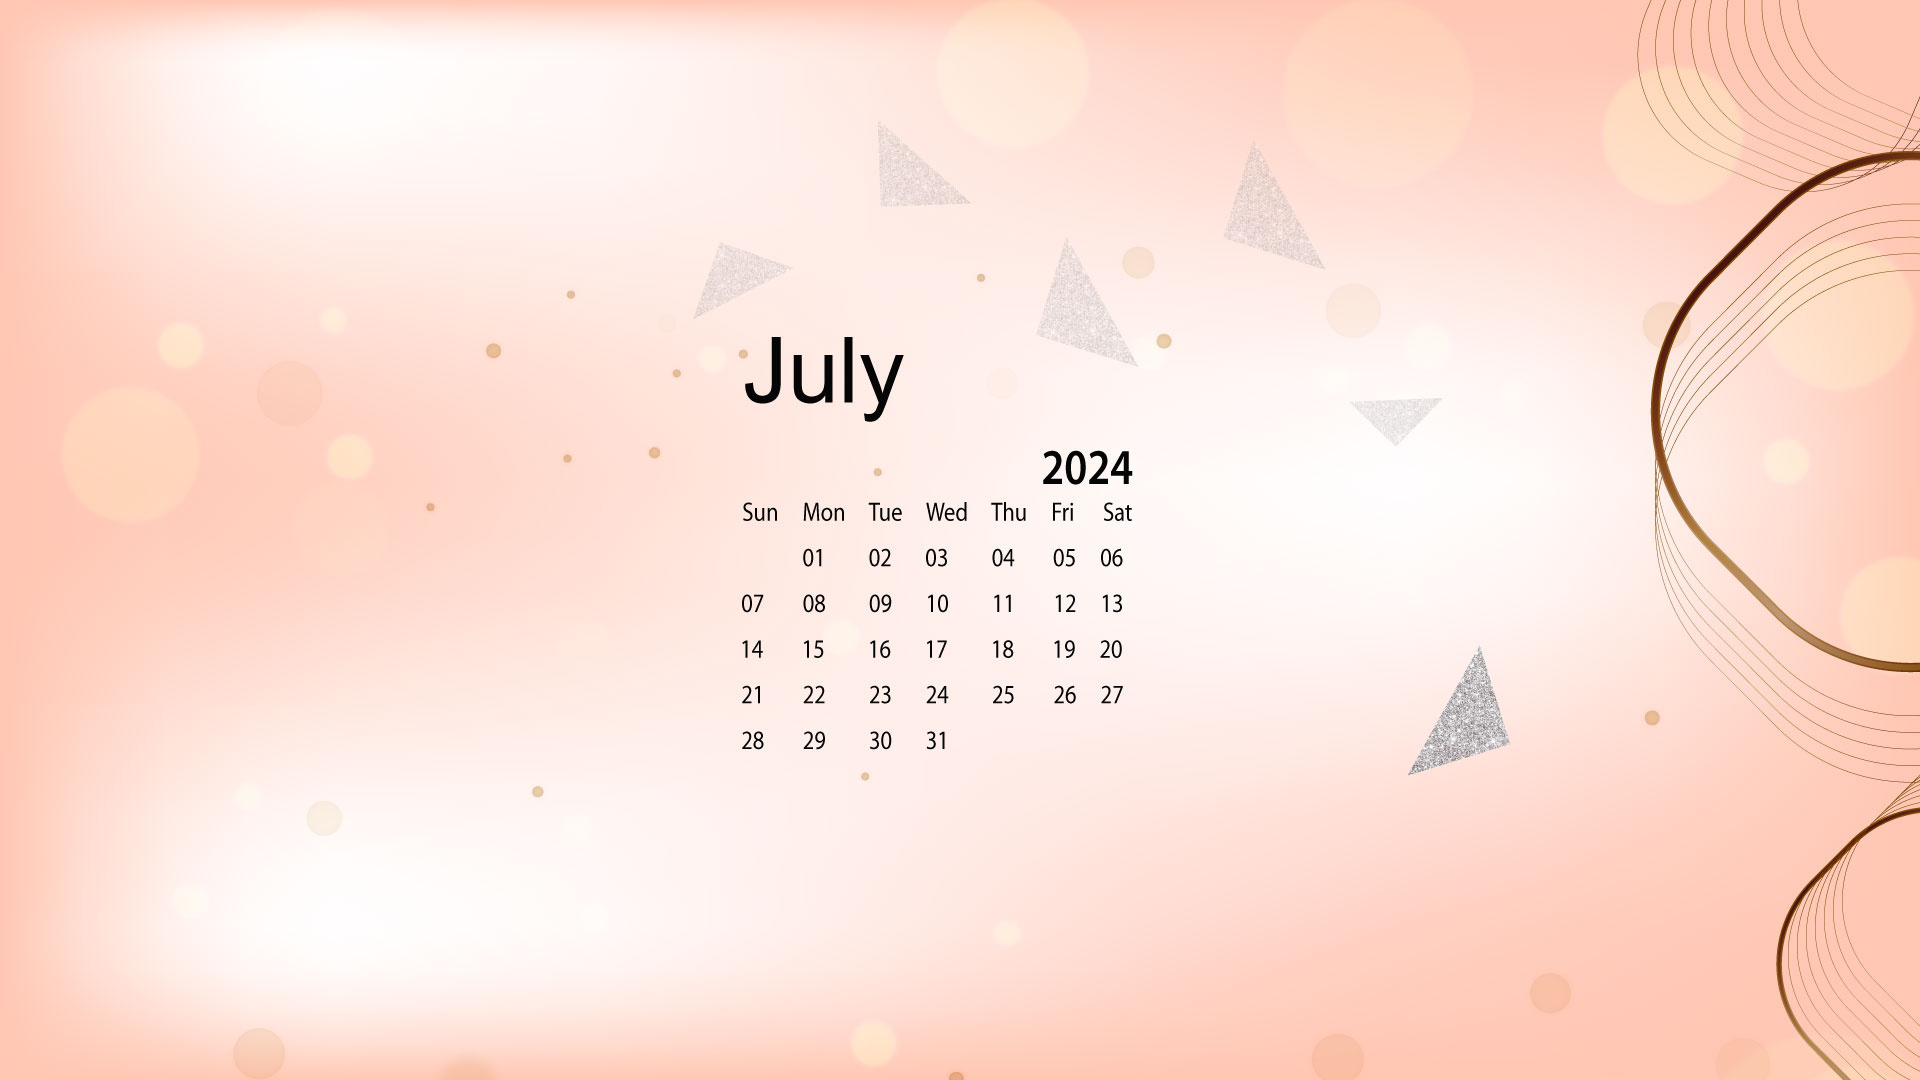 July 2024 Desktop Wallpaper Calendar - Calendarlabs with regard to July 2024 Wallpaper Calendar